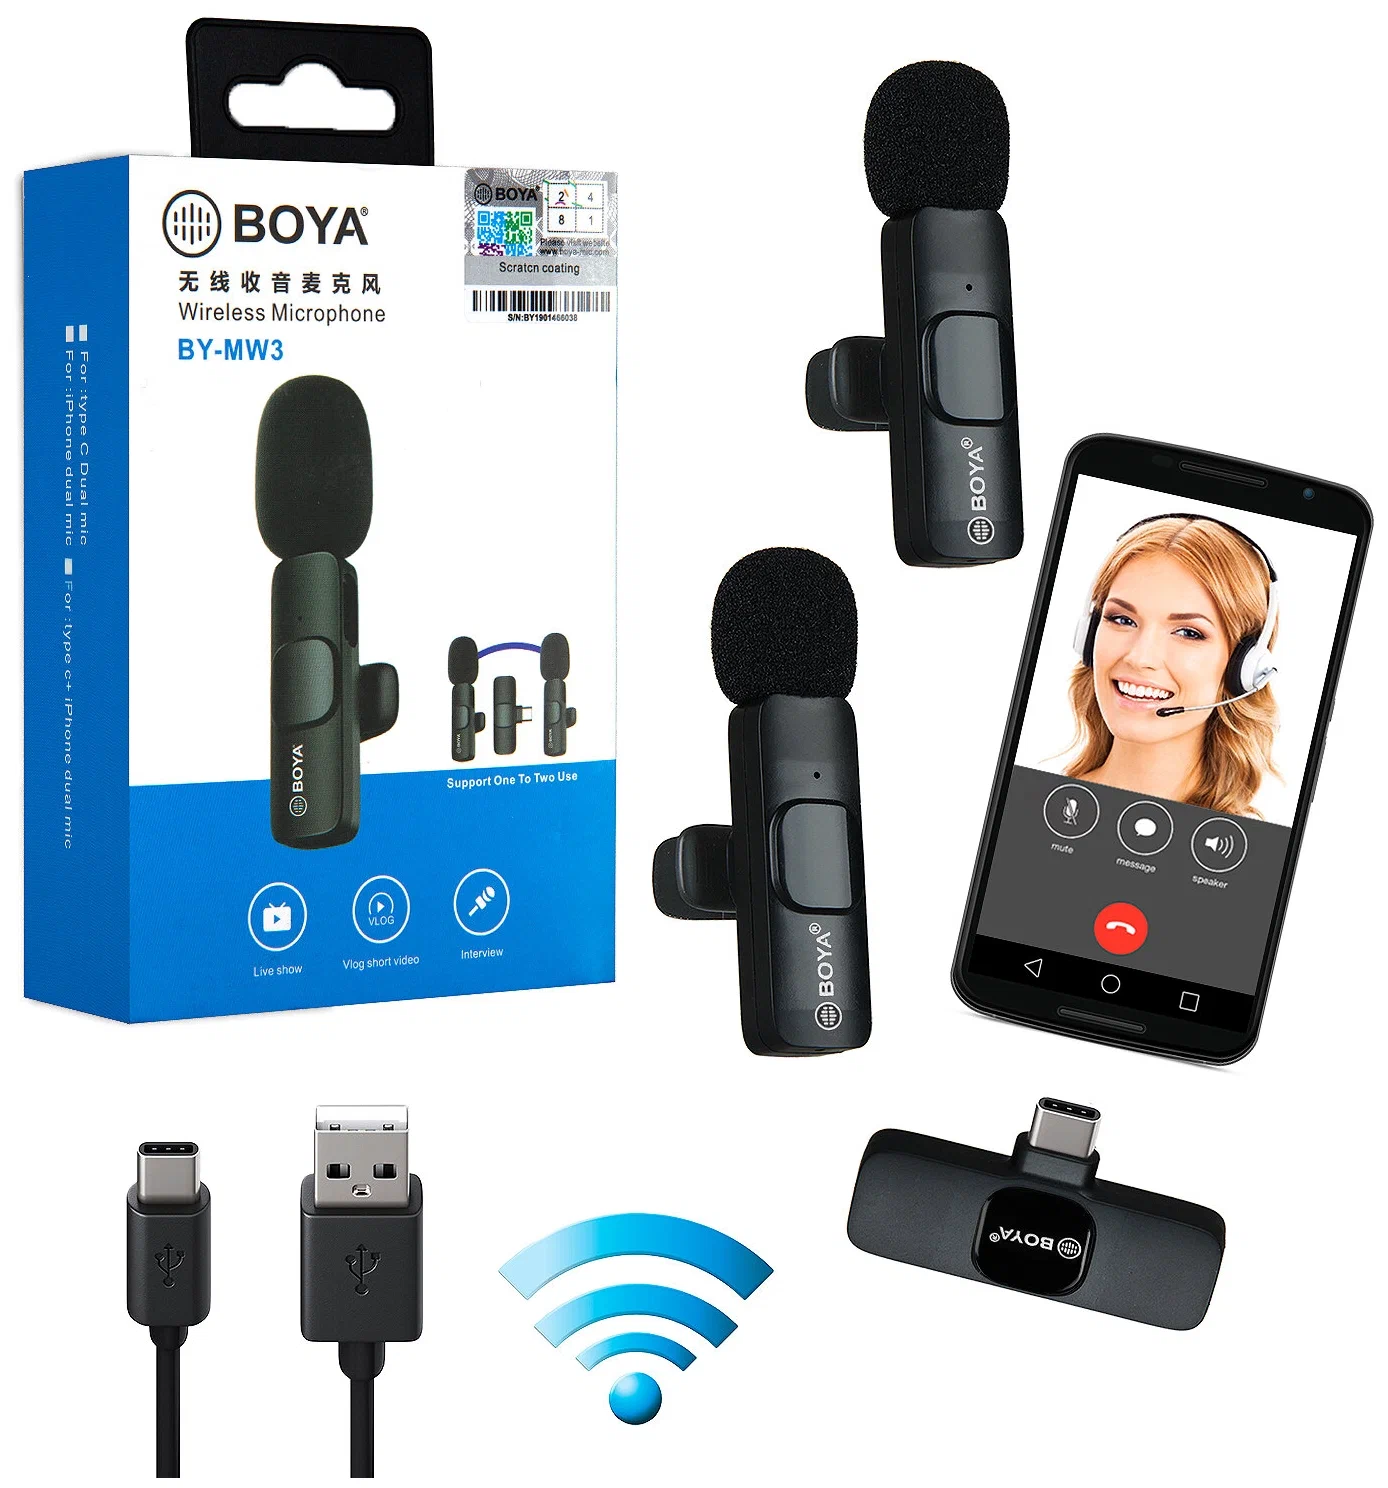 BOYA BY-MW3 Wireless Microphone